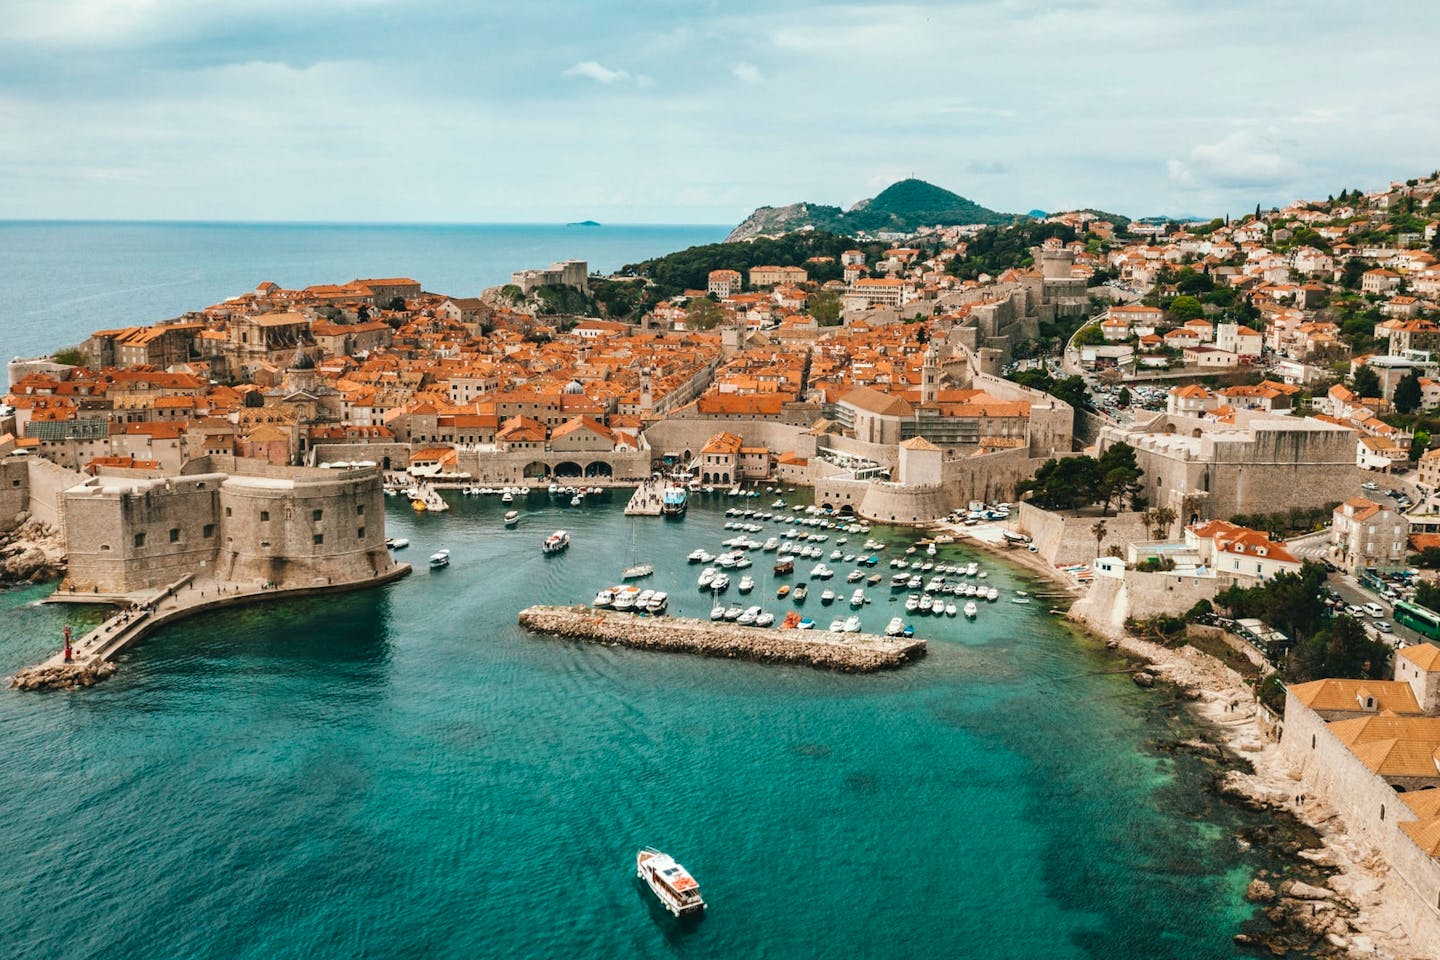 Coliving in Dubrovnik